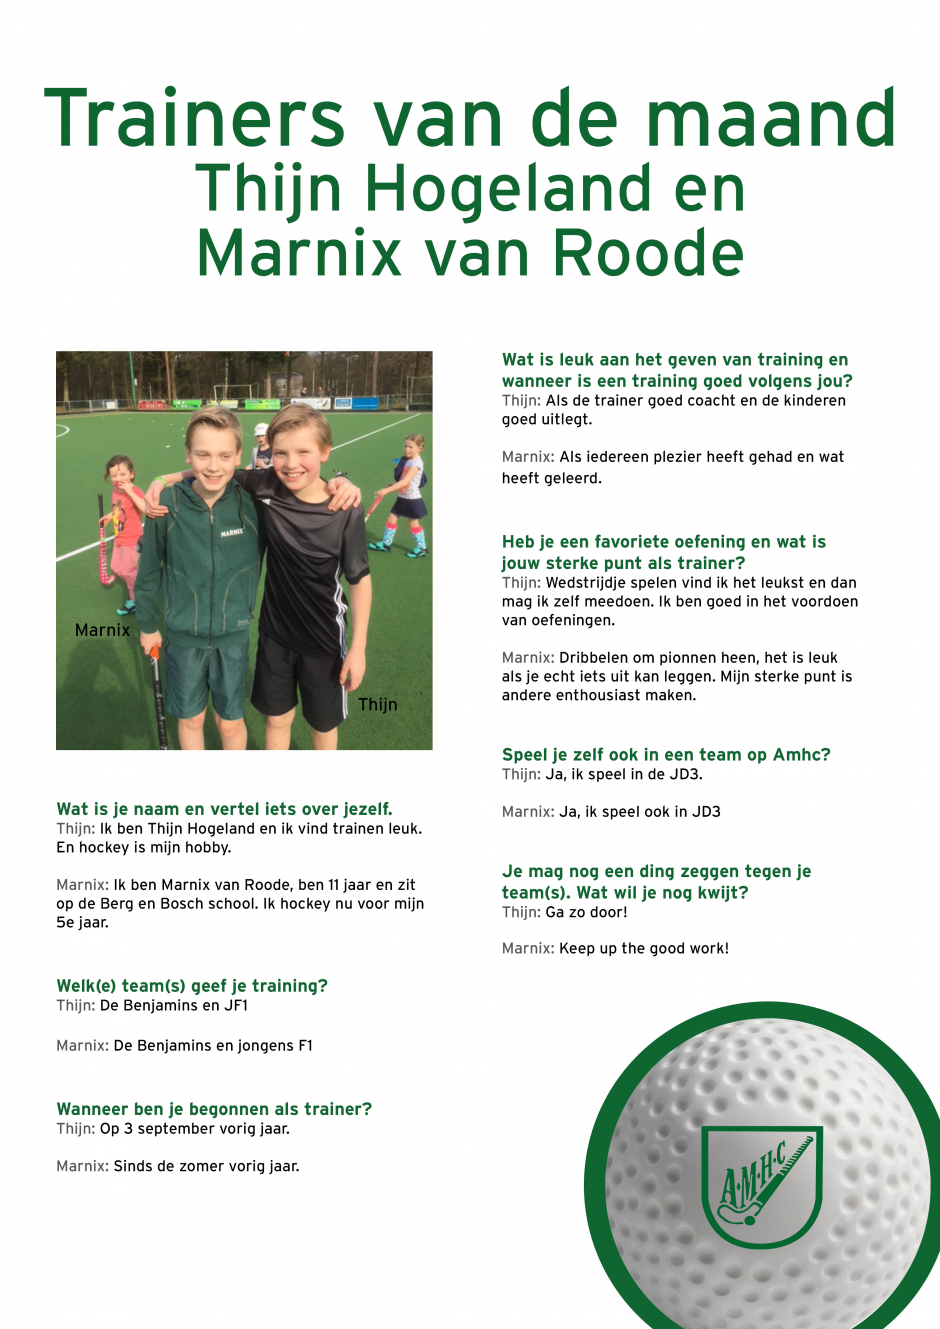 Trainers van de maand Thijn en Marnix